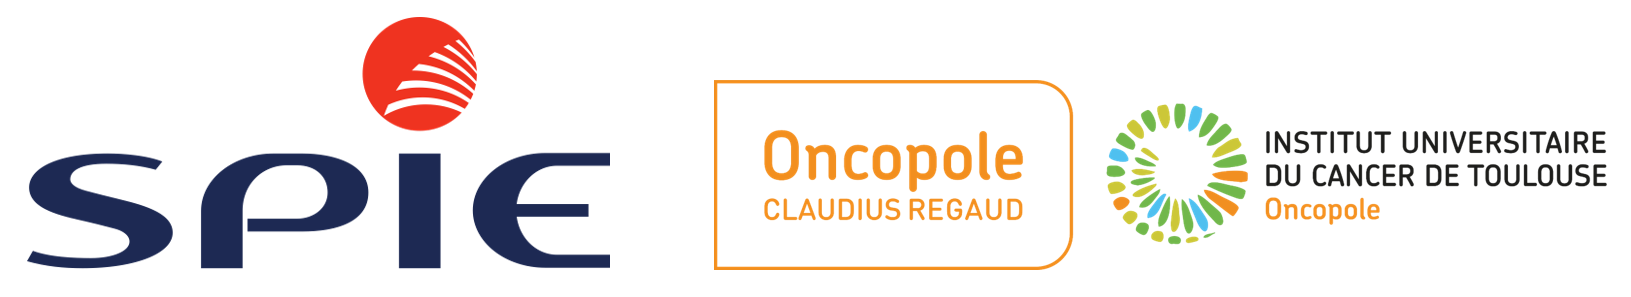 Oncopole Claudius Regaud